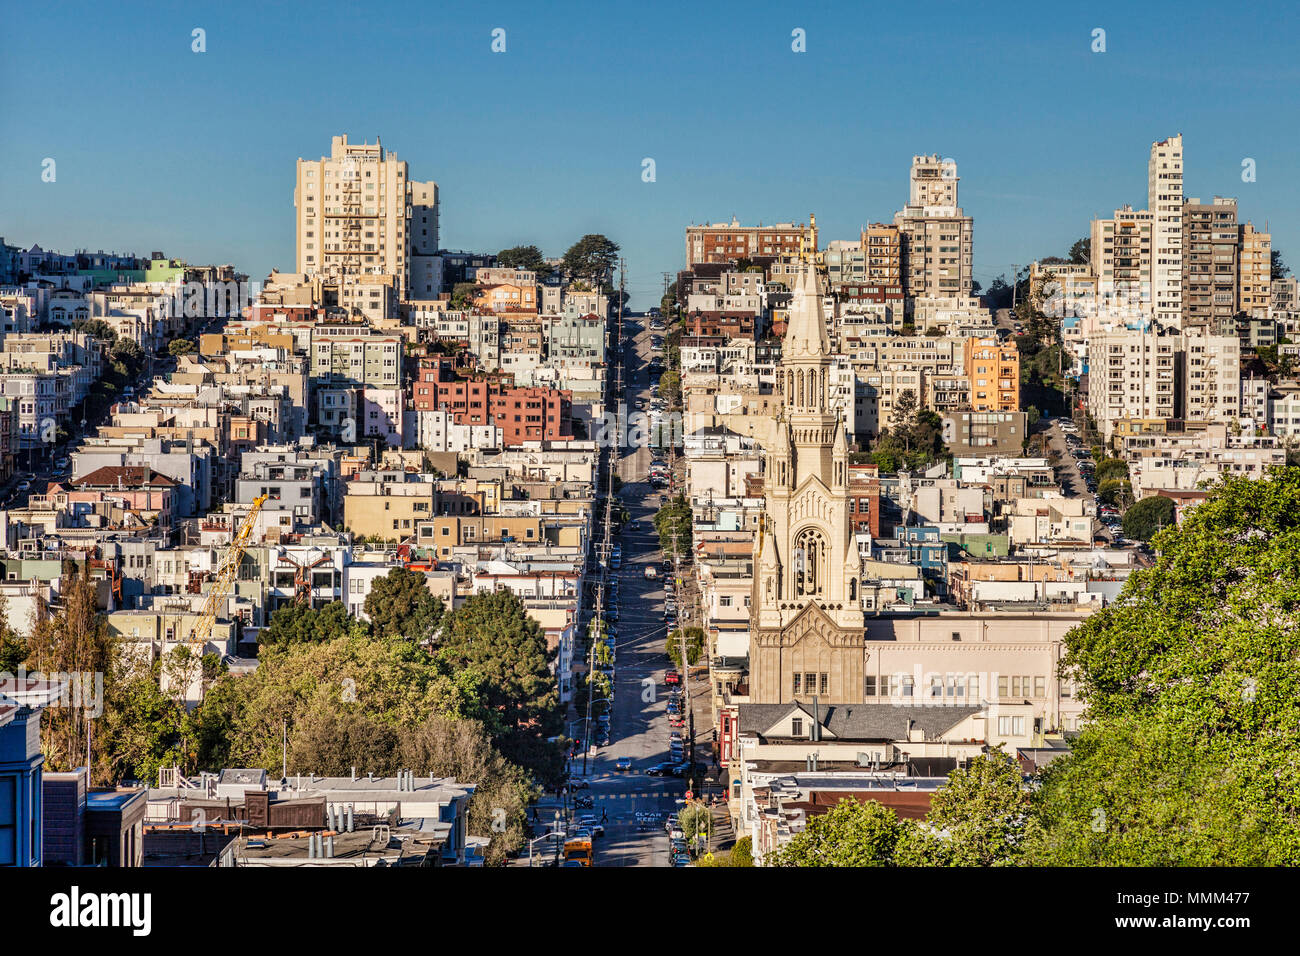 La ville de San Francisco, avec les Saints Pierre et Paul, Église et Filbert Street. Banque D'Images